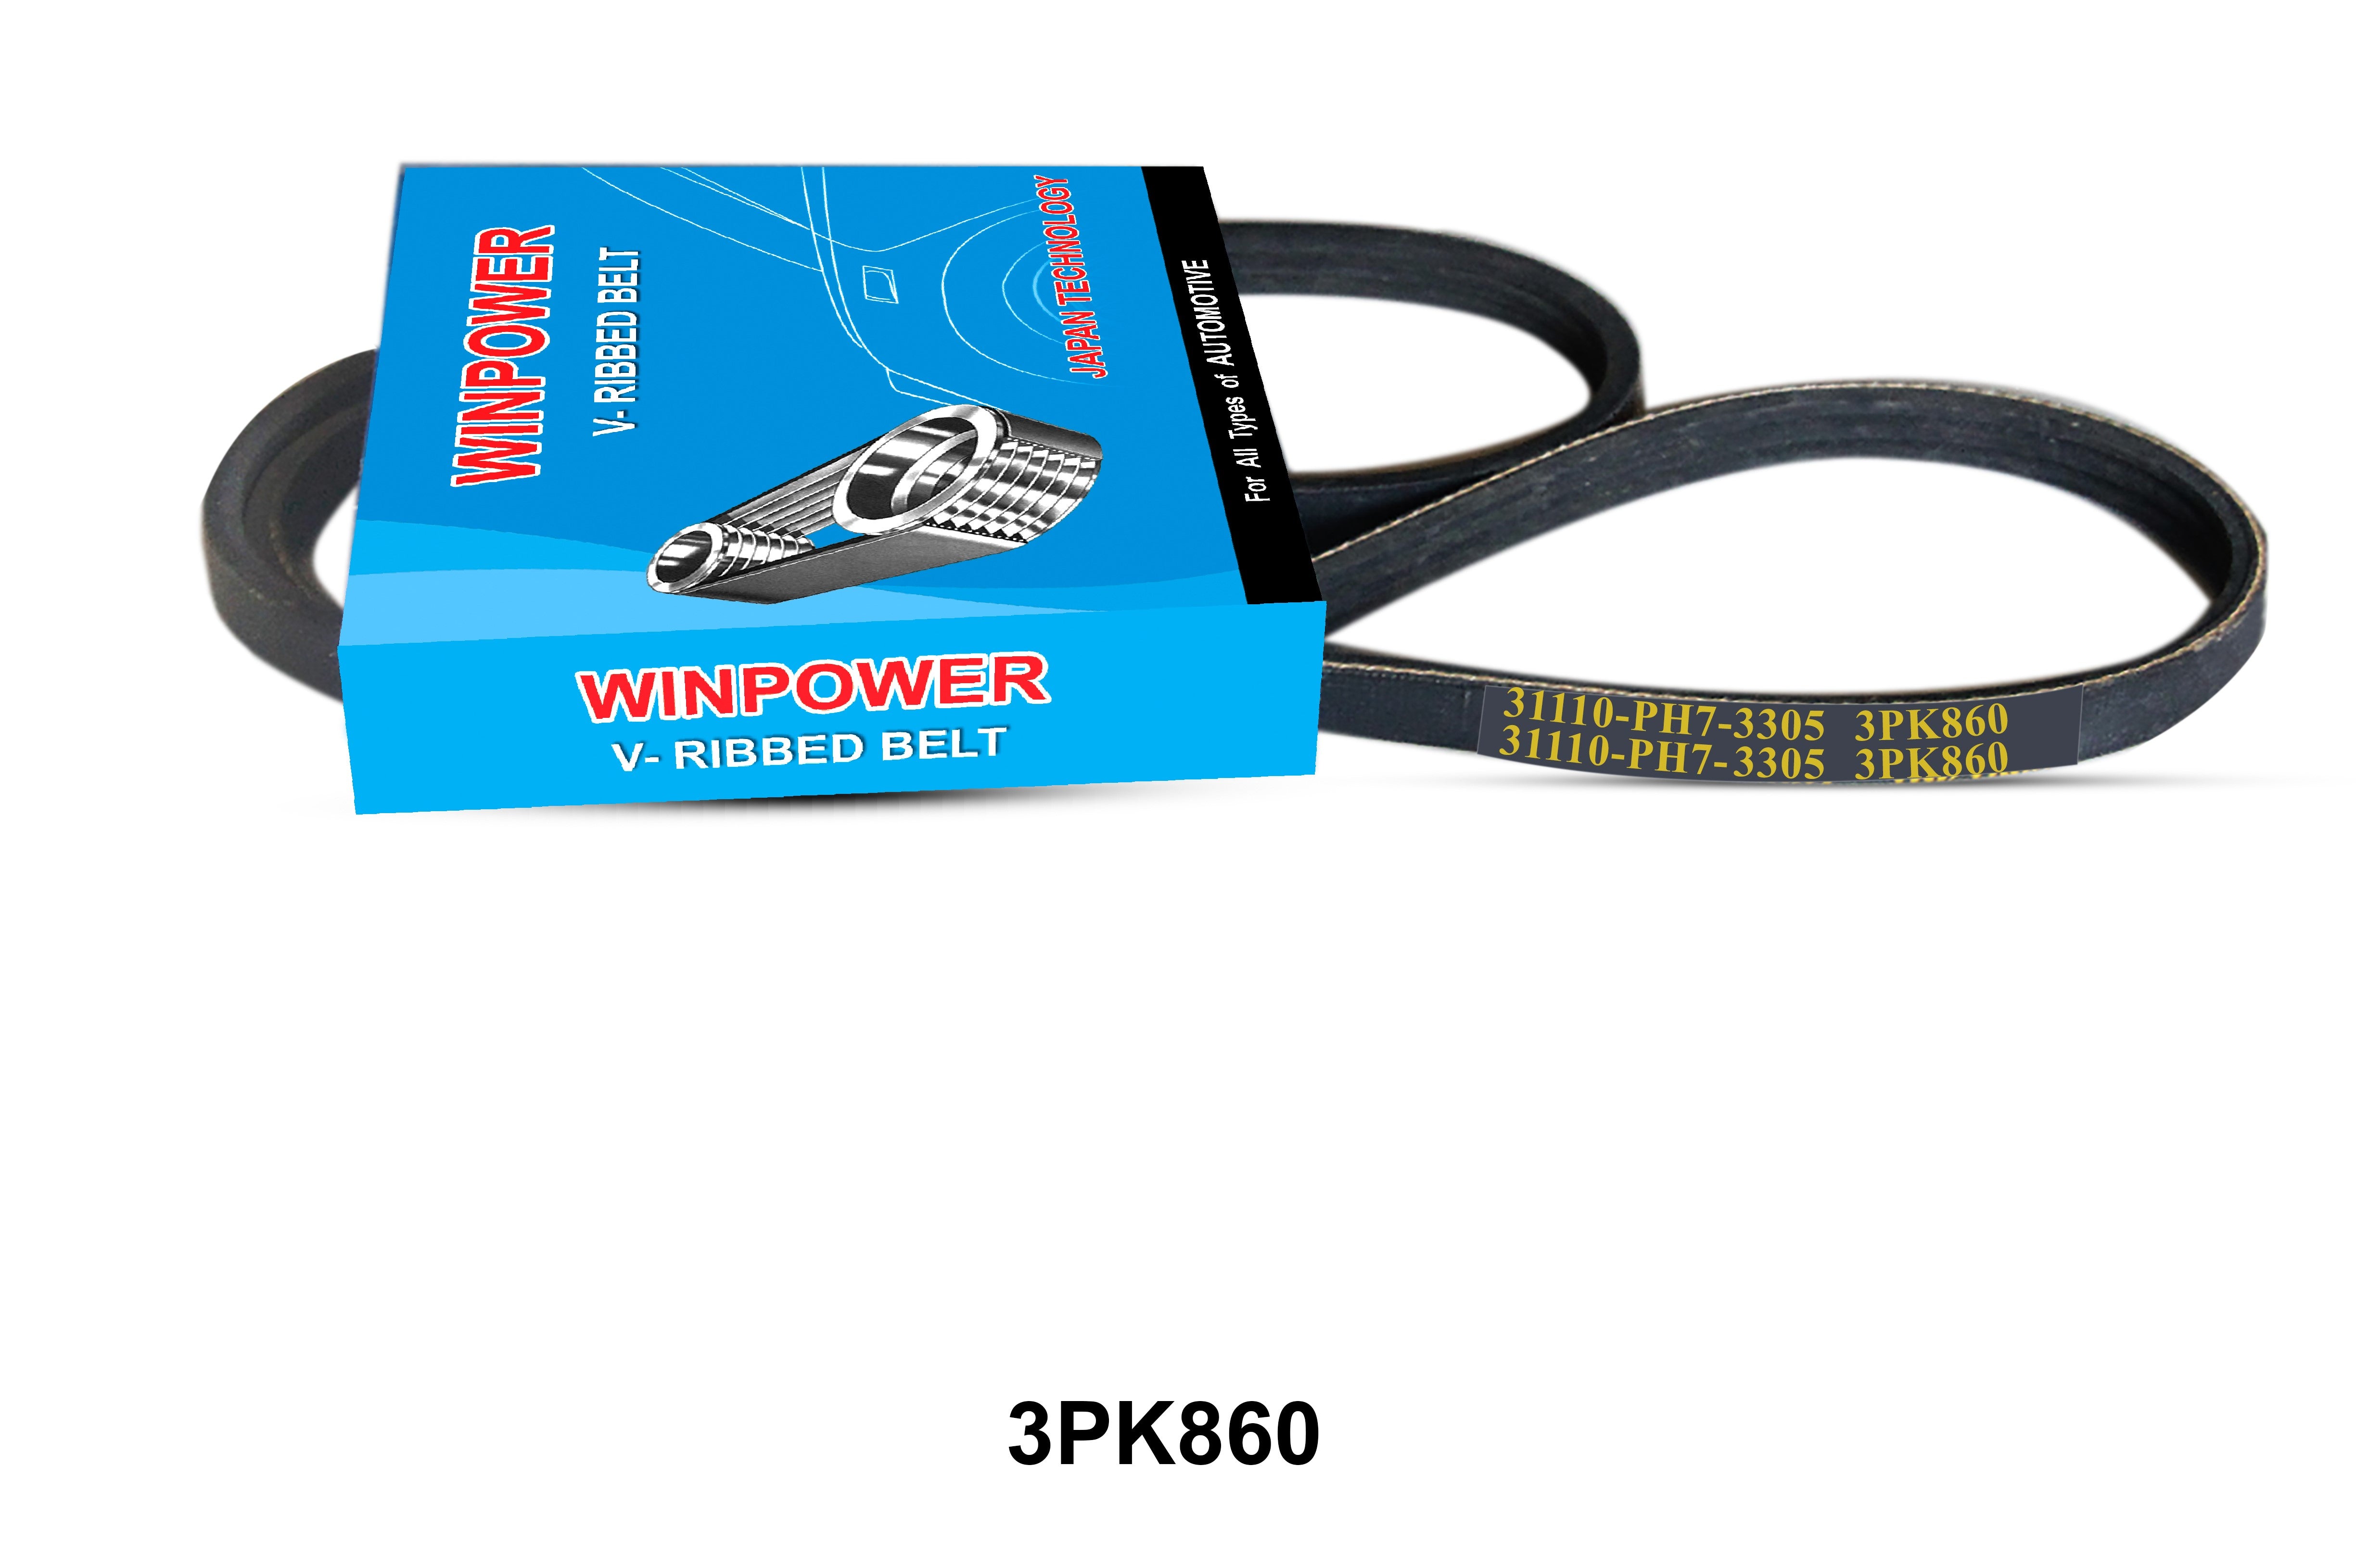 V-Ribbed Belt, WINPOWER, 3PK860 (007030)